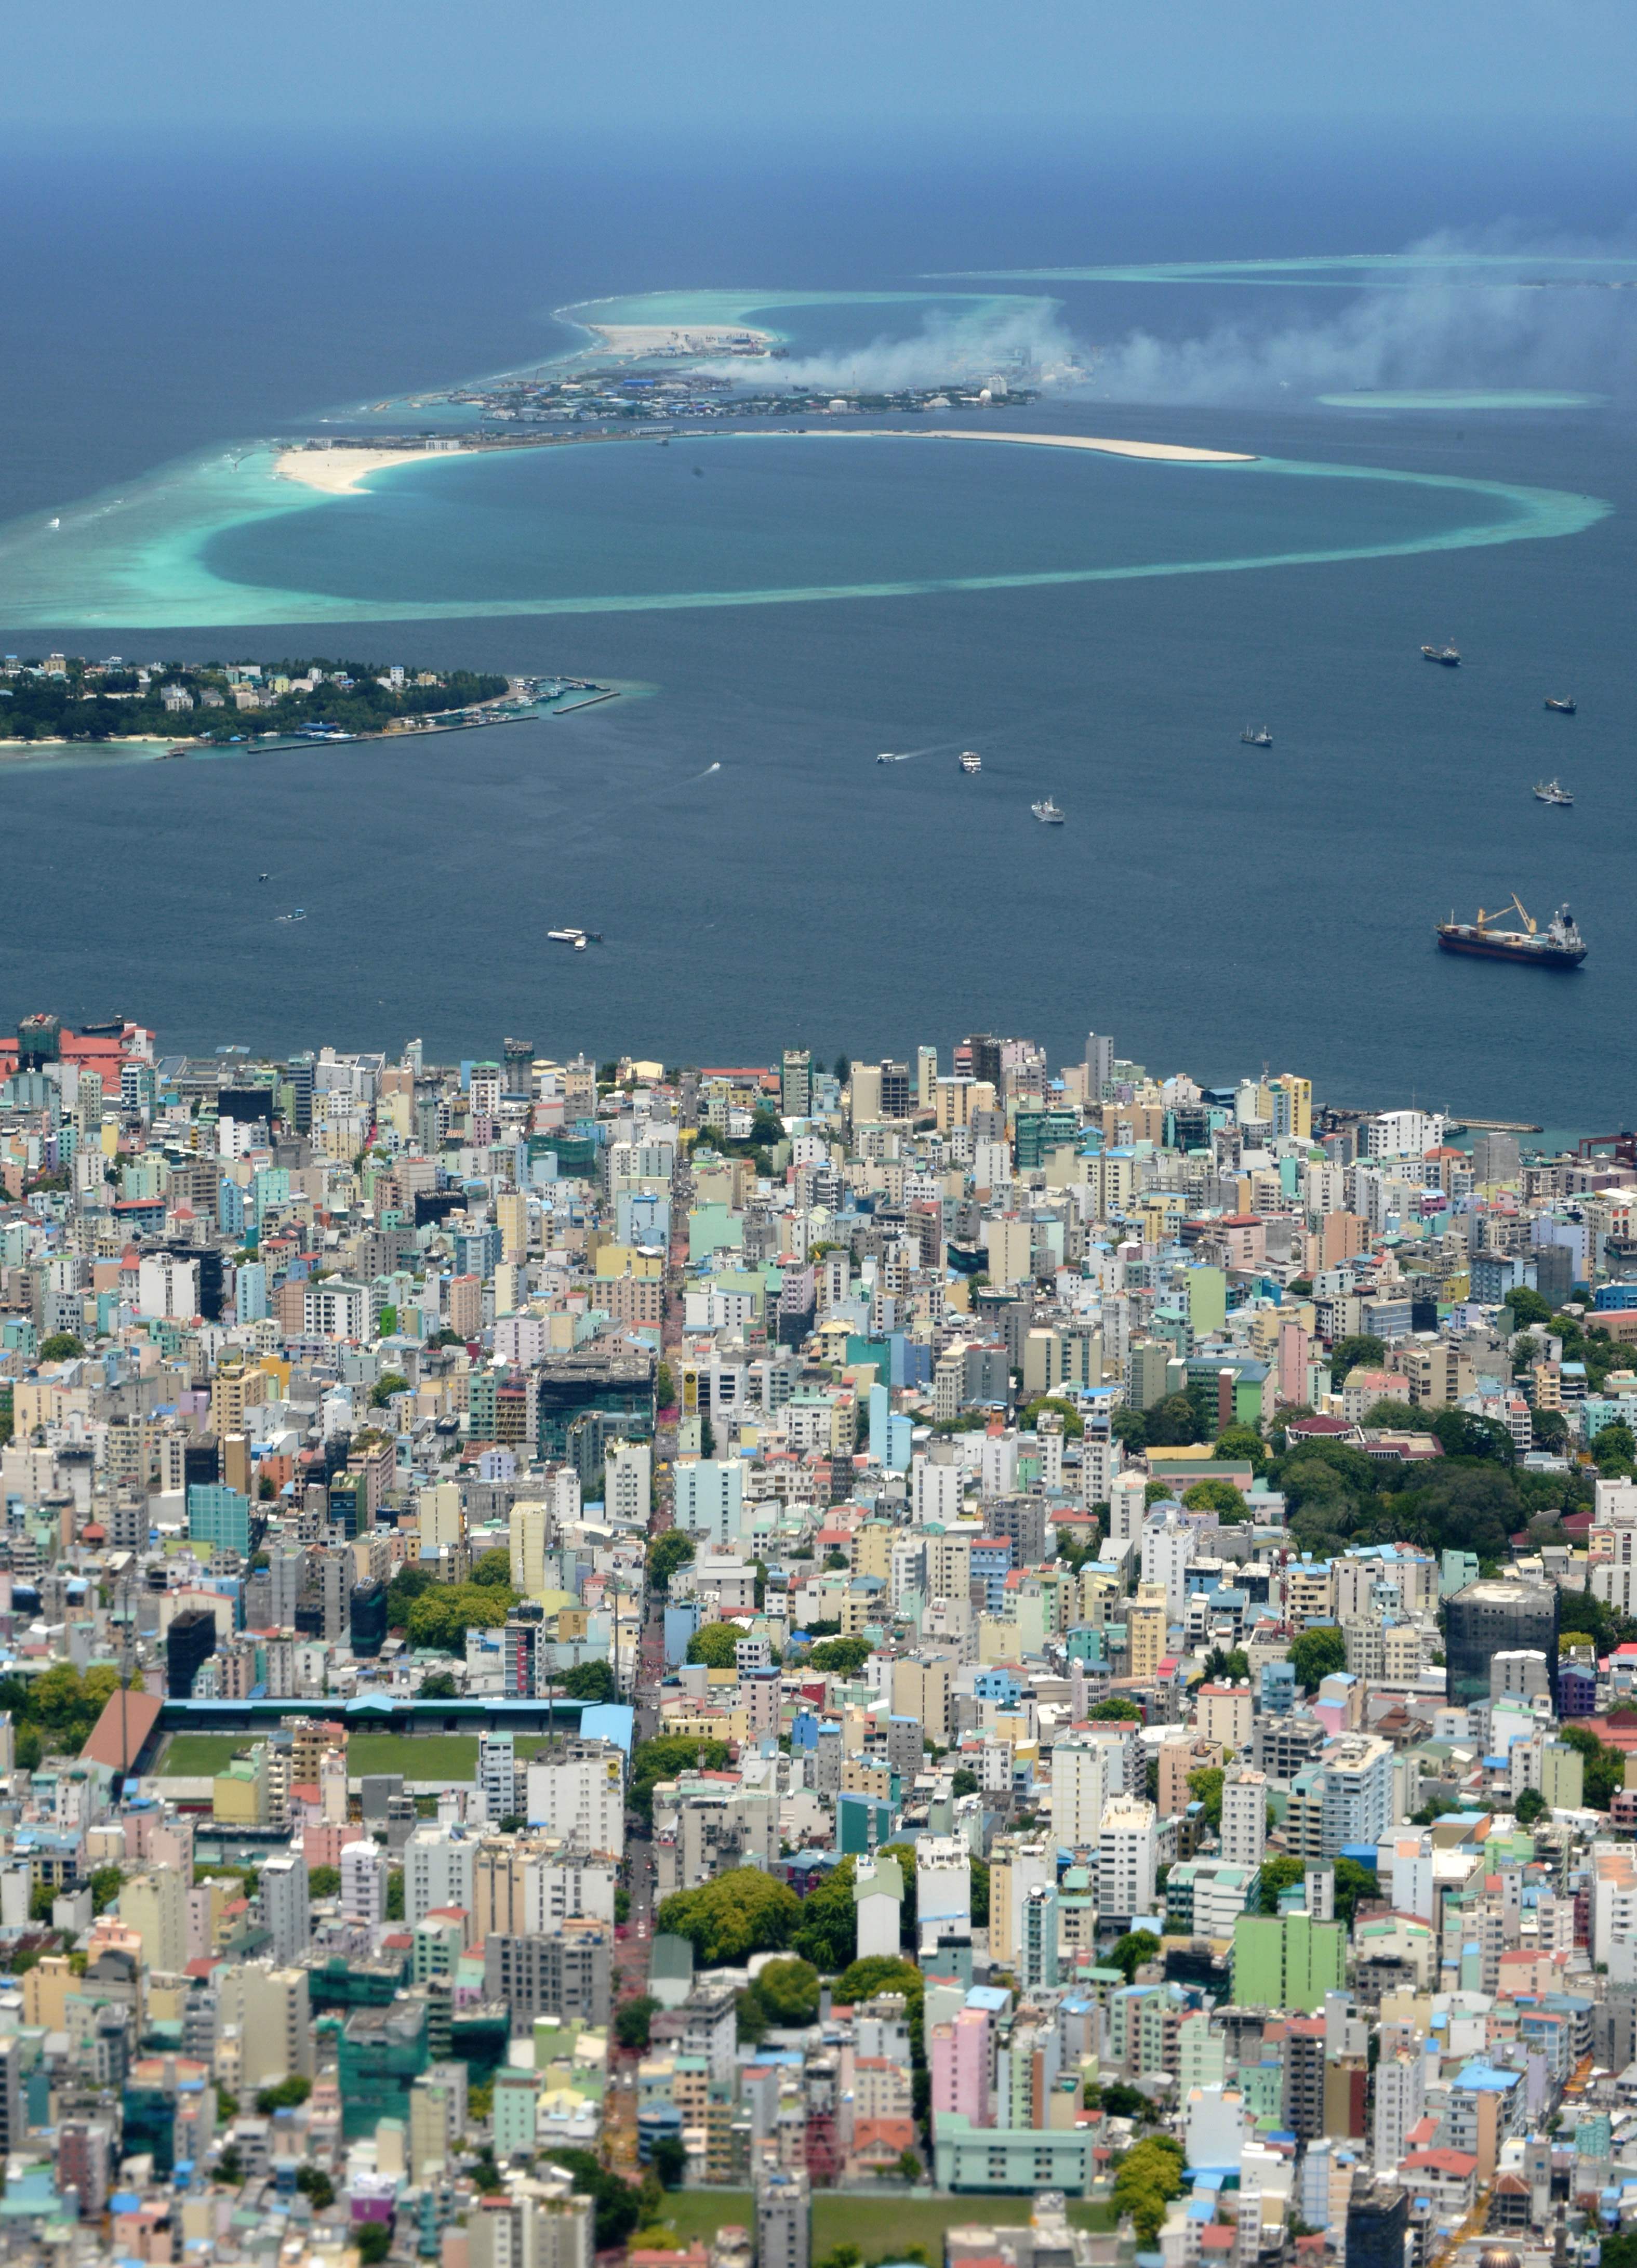 مشاهد ساحرة فى جزر المالديف